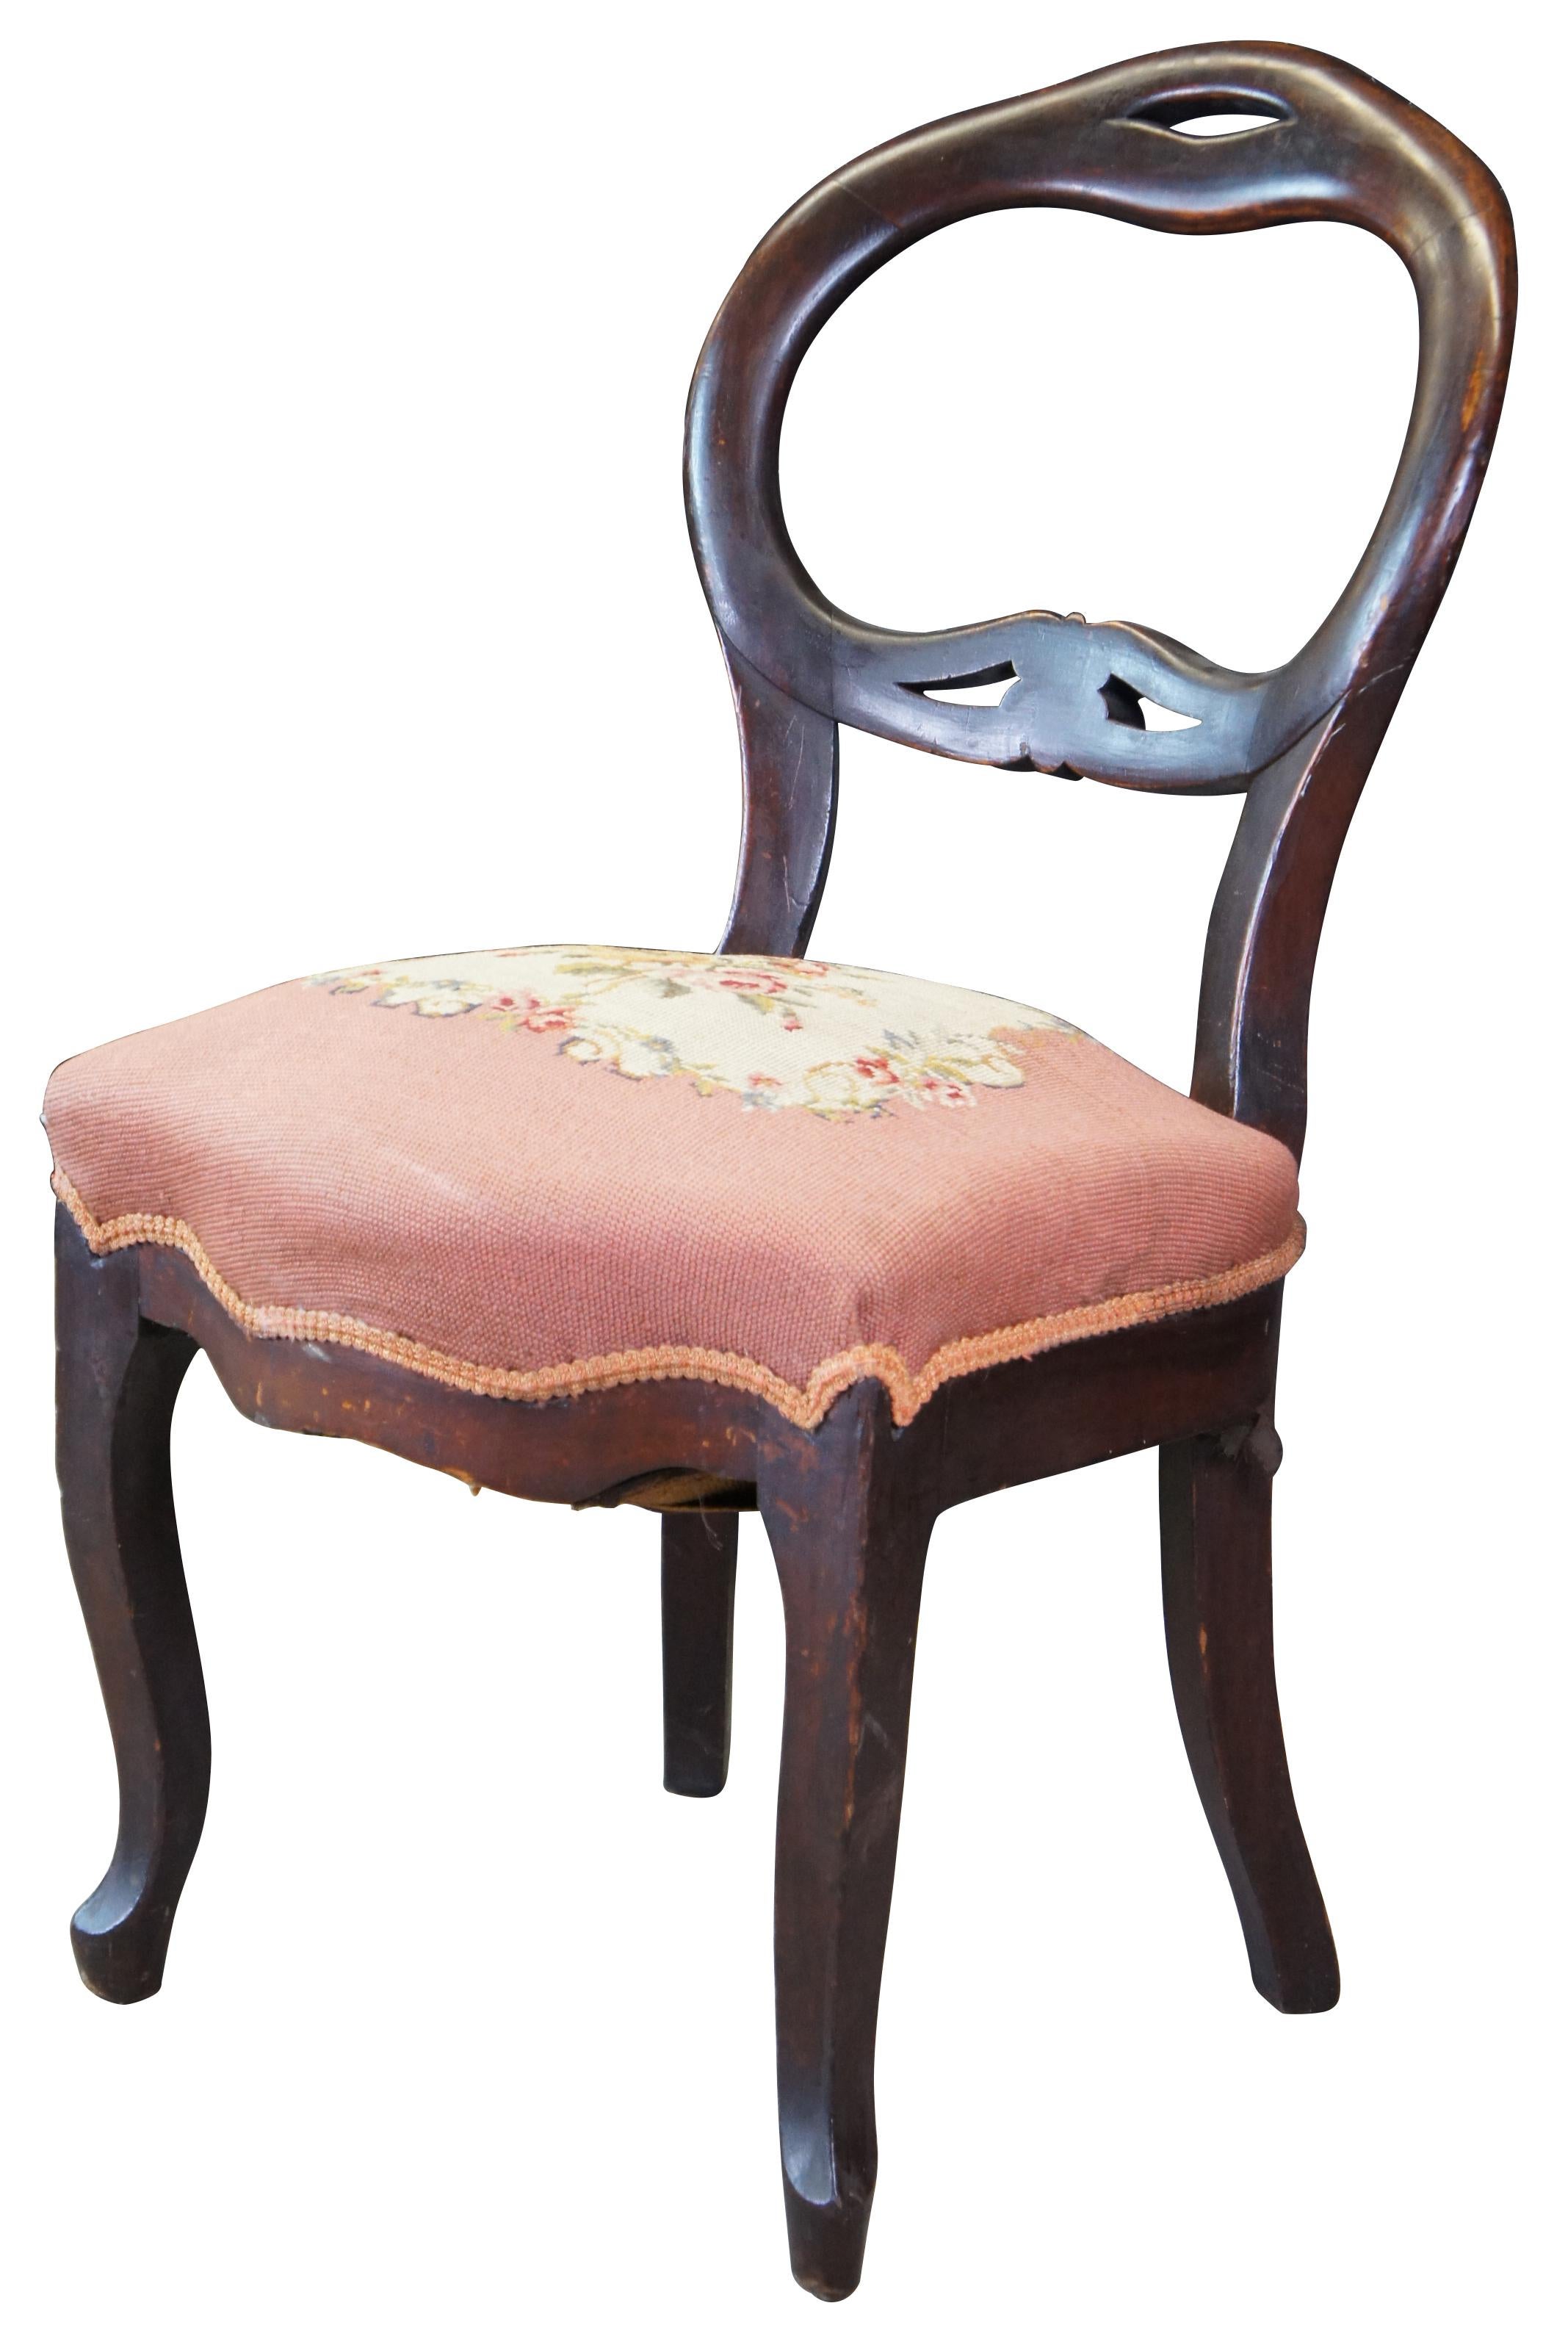 Antiker viktorianischer Mahagoni-Stuhl mit Ballonrückenlehne und Sitz aus Nadelspitze. Maßnahme: 35